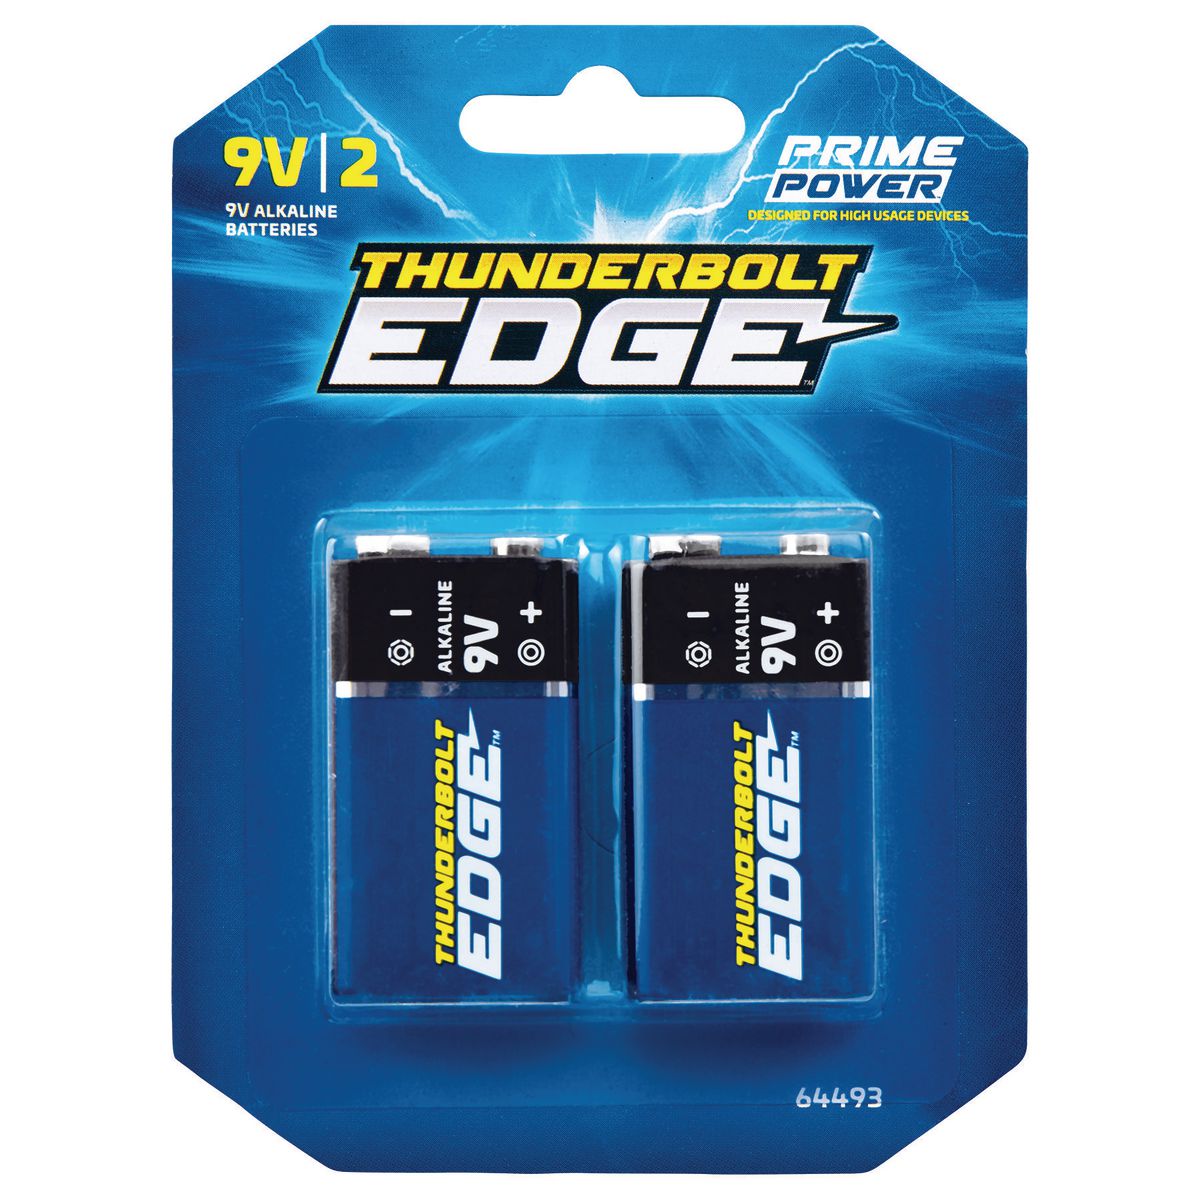 THUNDERBOLT EDGE 9V Alkaline Batteries 2 Pk. - Item 64493